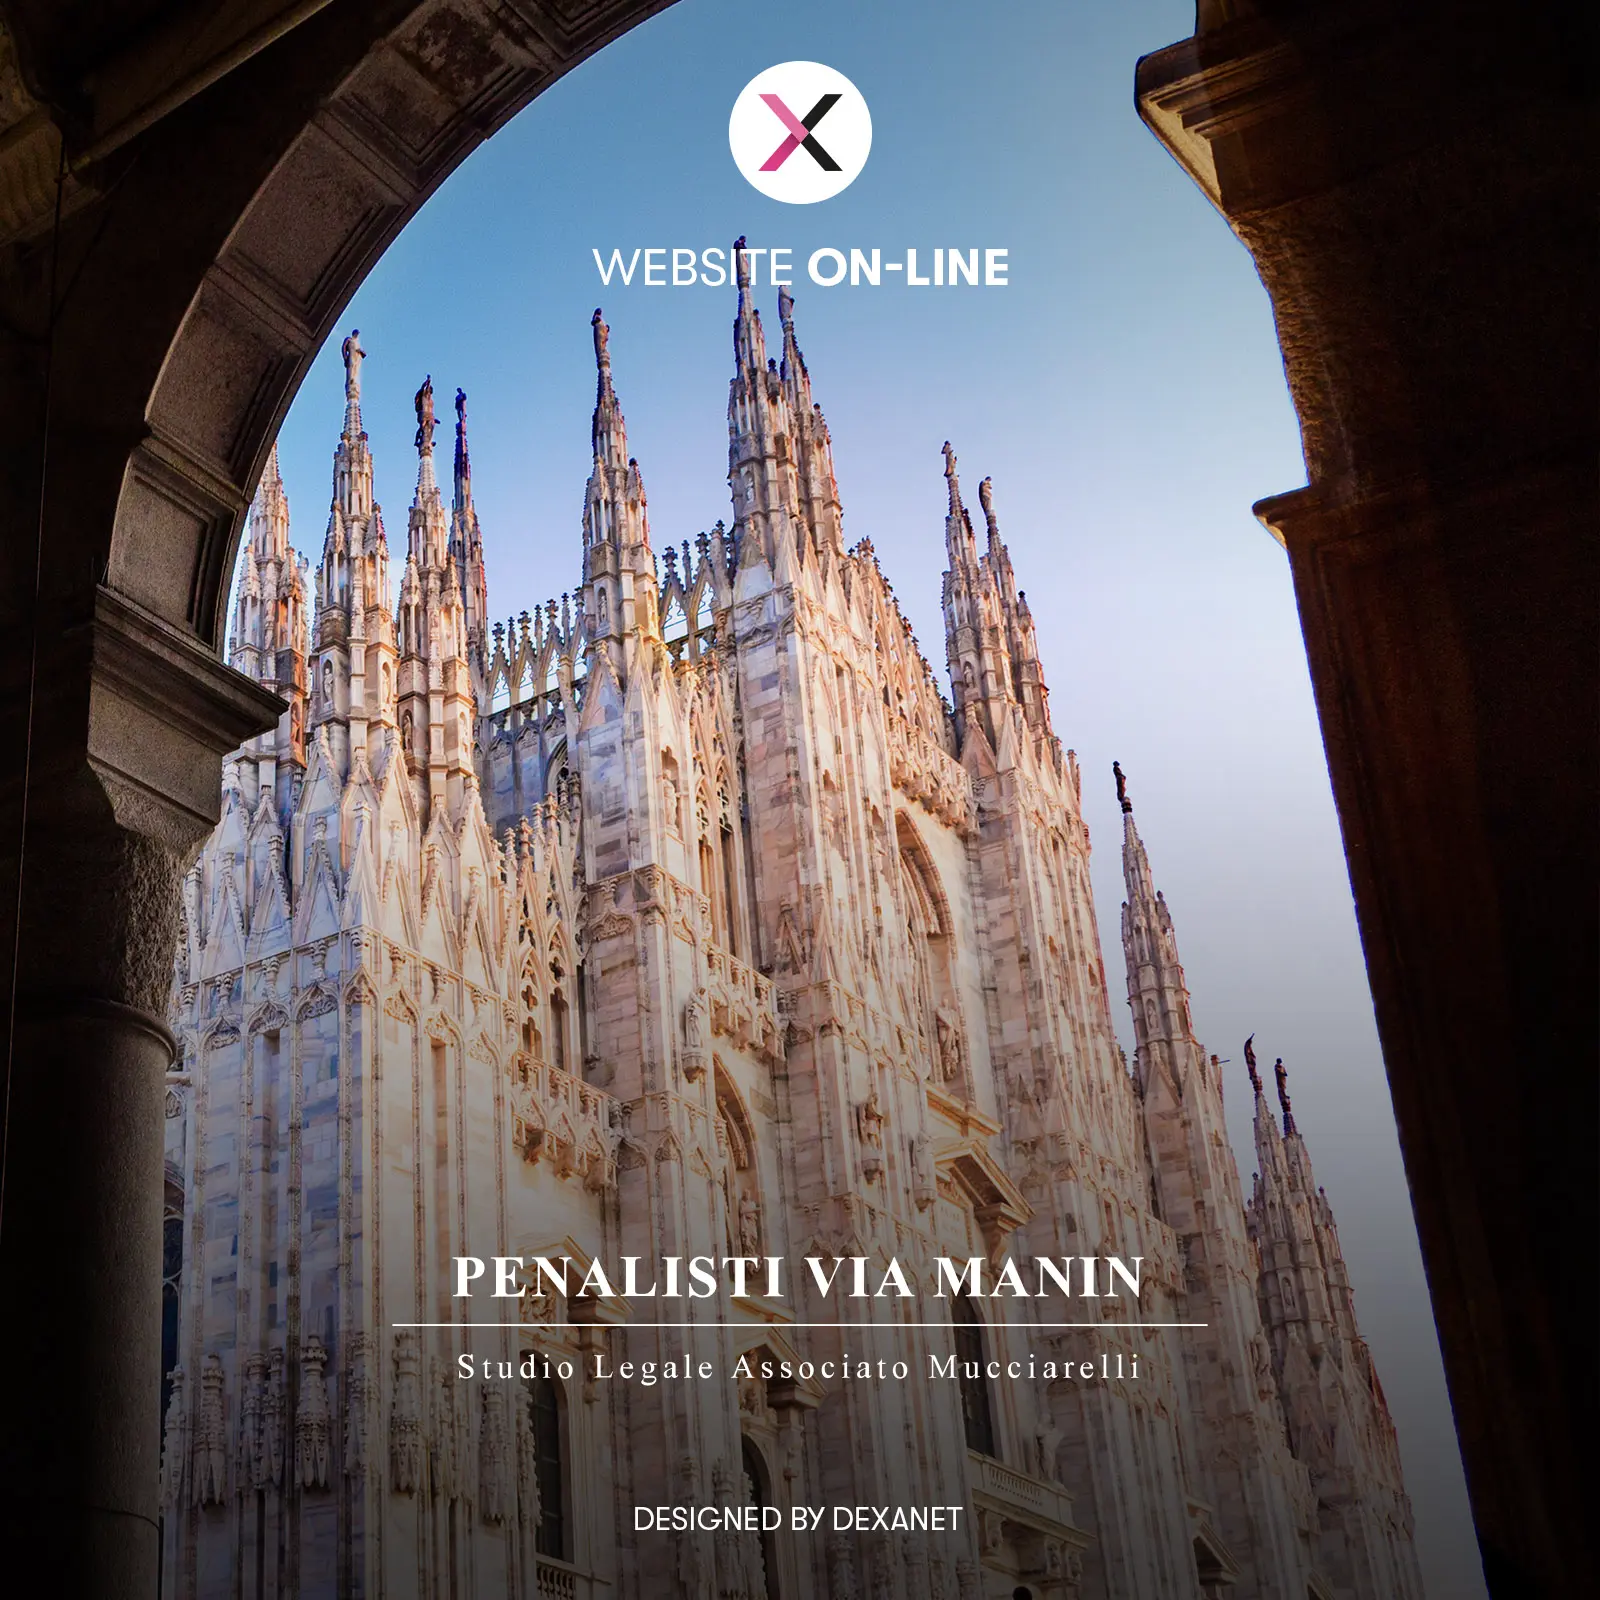 Realizzazione di un sito internet per uno studio legale: ‘Penalisti Via Manin 3’ di Milano è online.